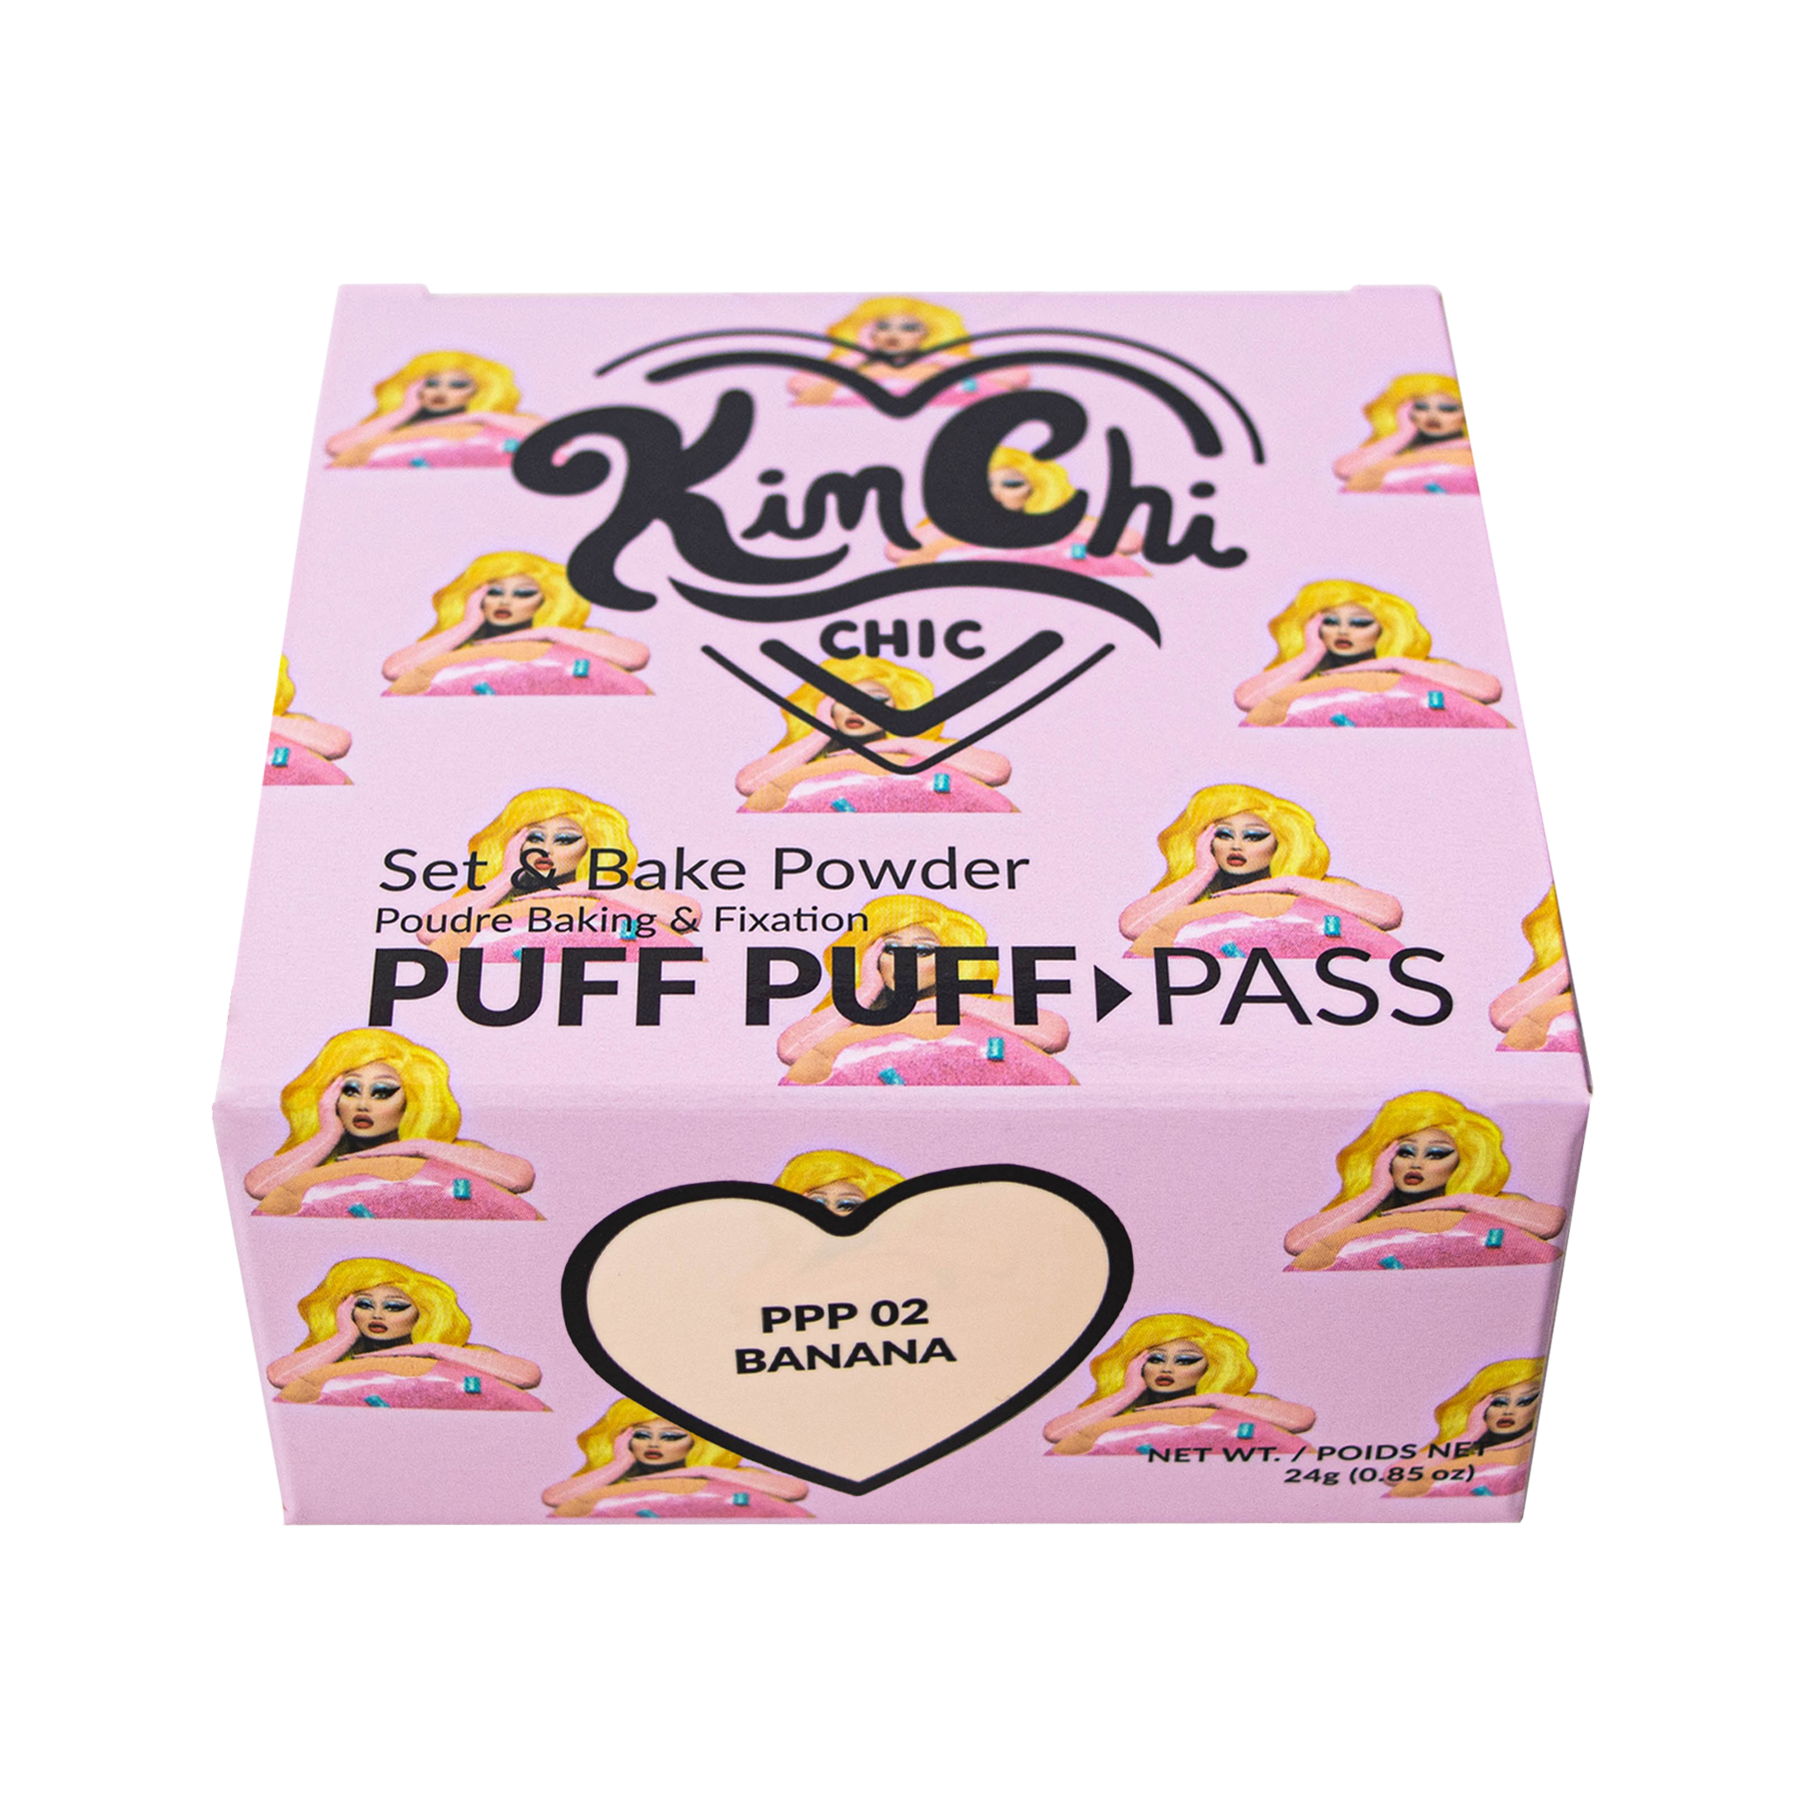 KimChi Chic - Puff Puff Pass Powder Banana